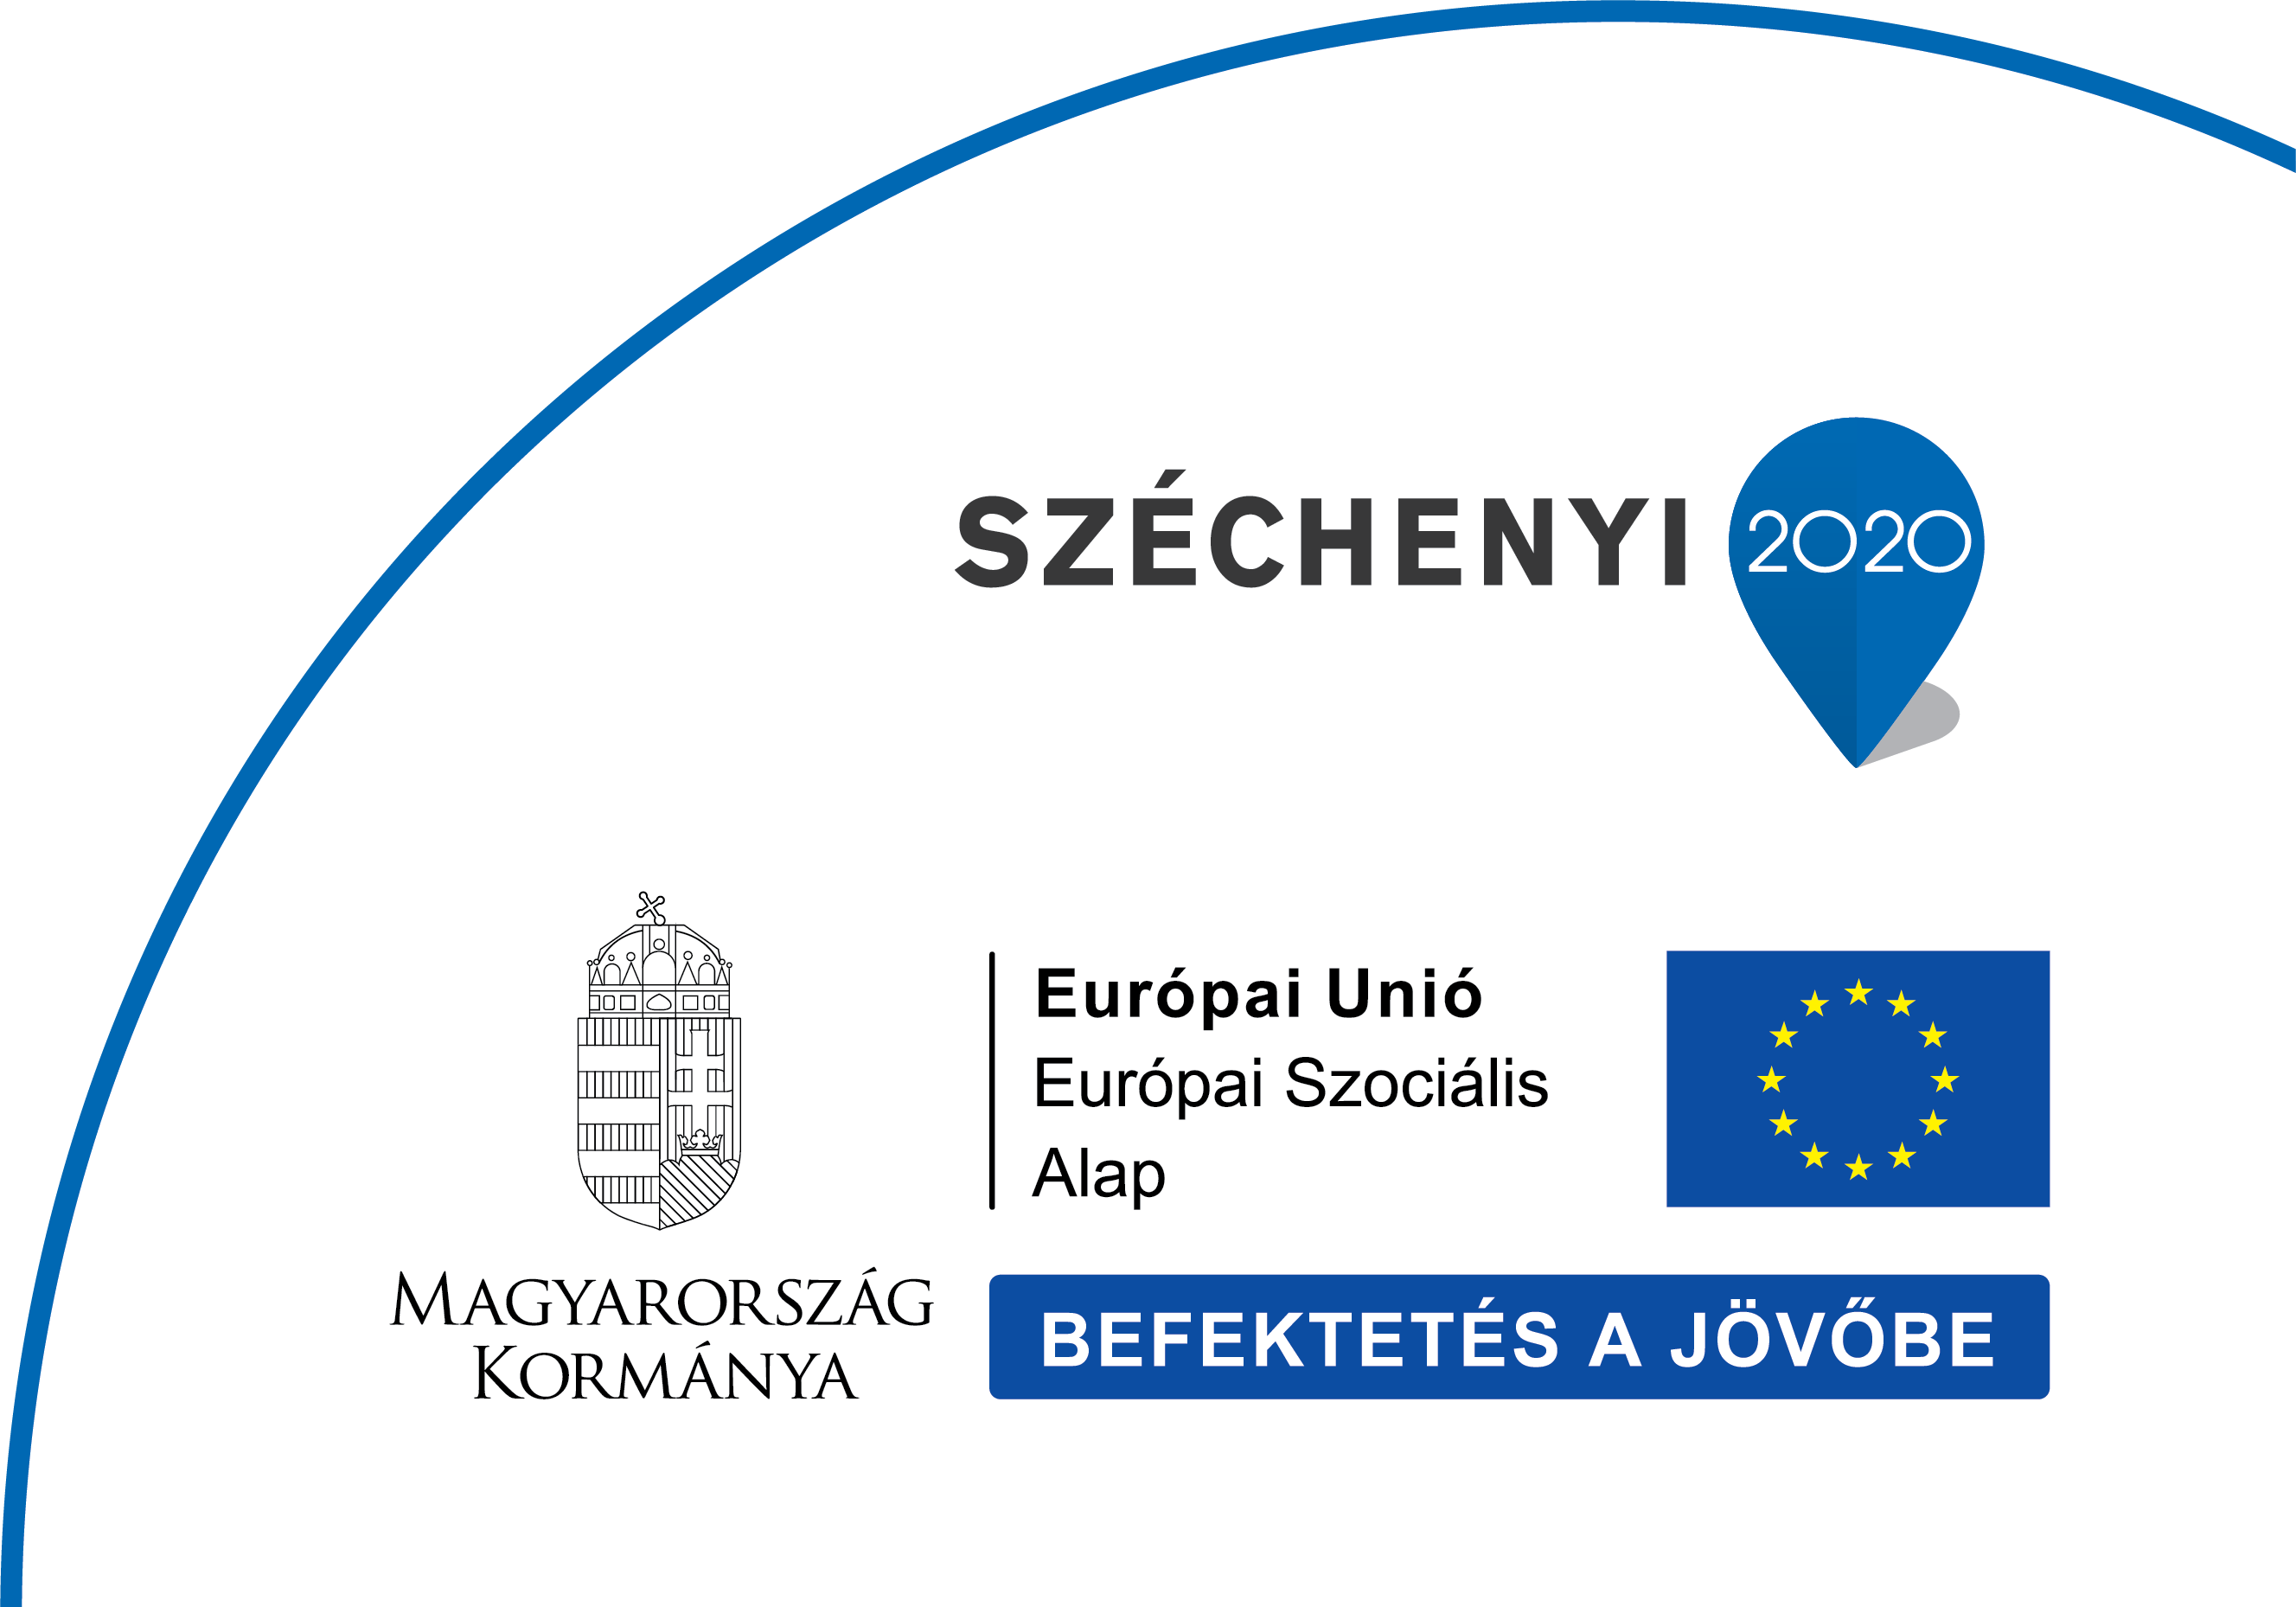 Széchenyi 2020 logo Befektetés a jövőbe